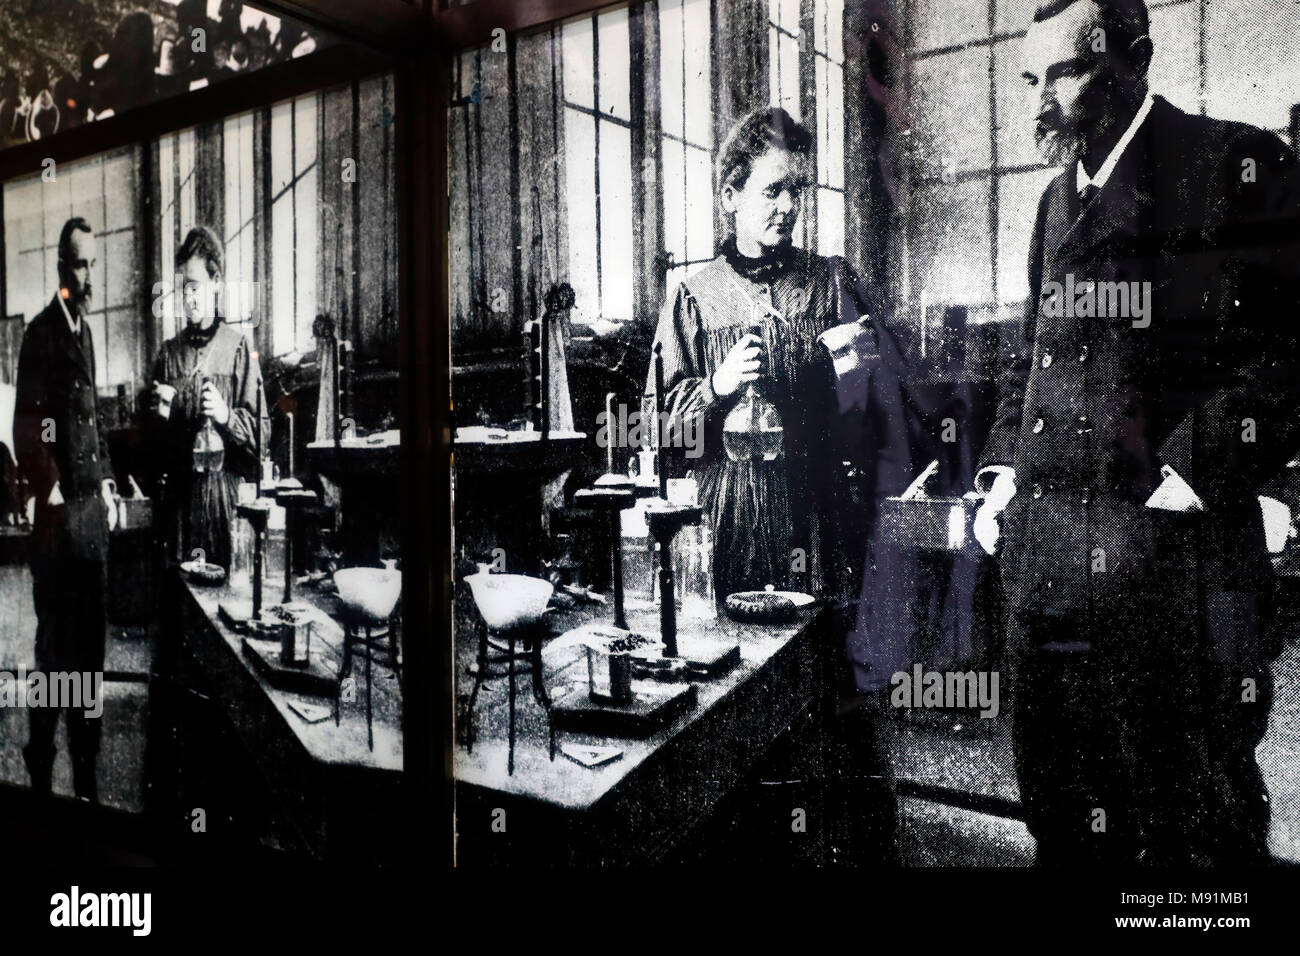 Ho Chi Minh museum. Pierre et Marie Curie, physicien et chimiste, qui a effectué des recherches sur la radioactivité. Hanoi. Le Vietnam. Banque D'Images